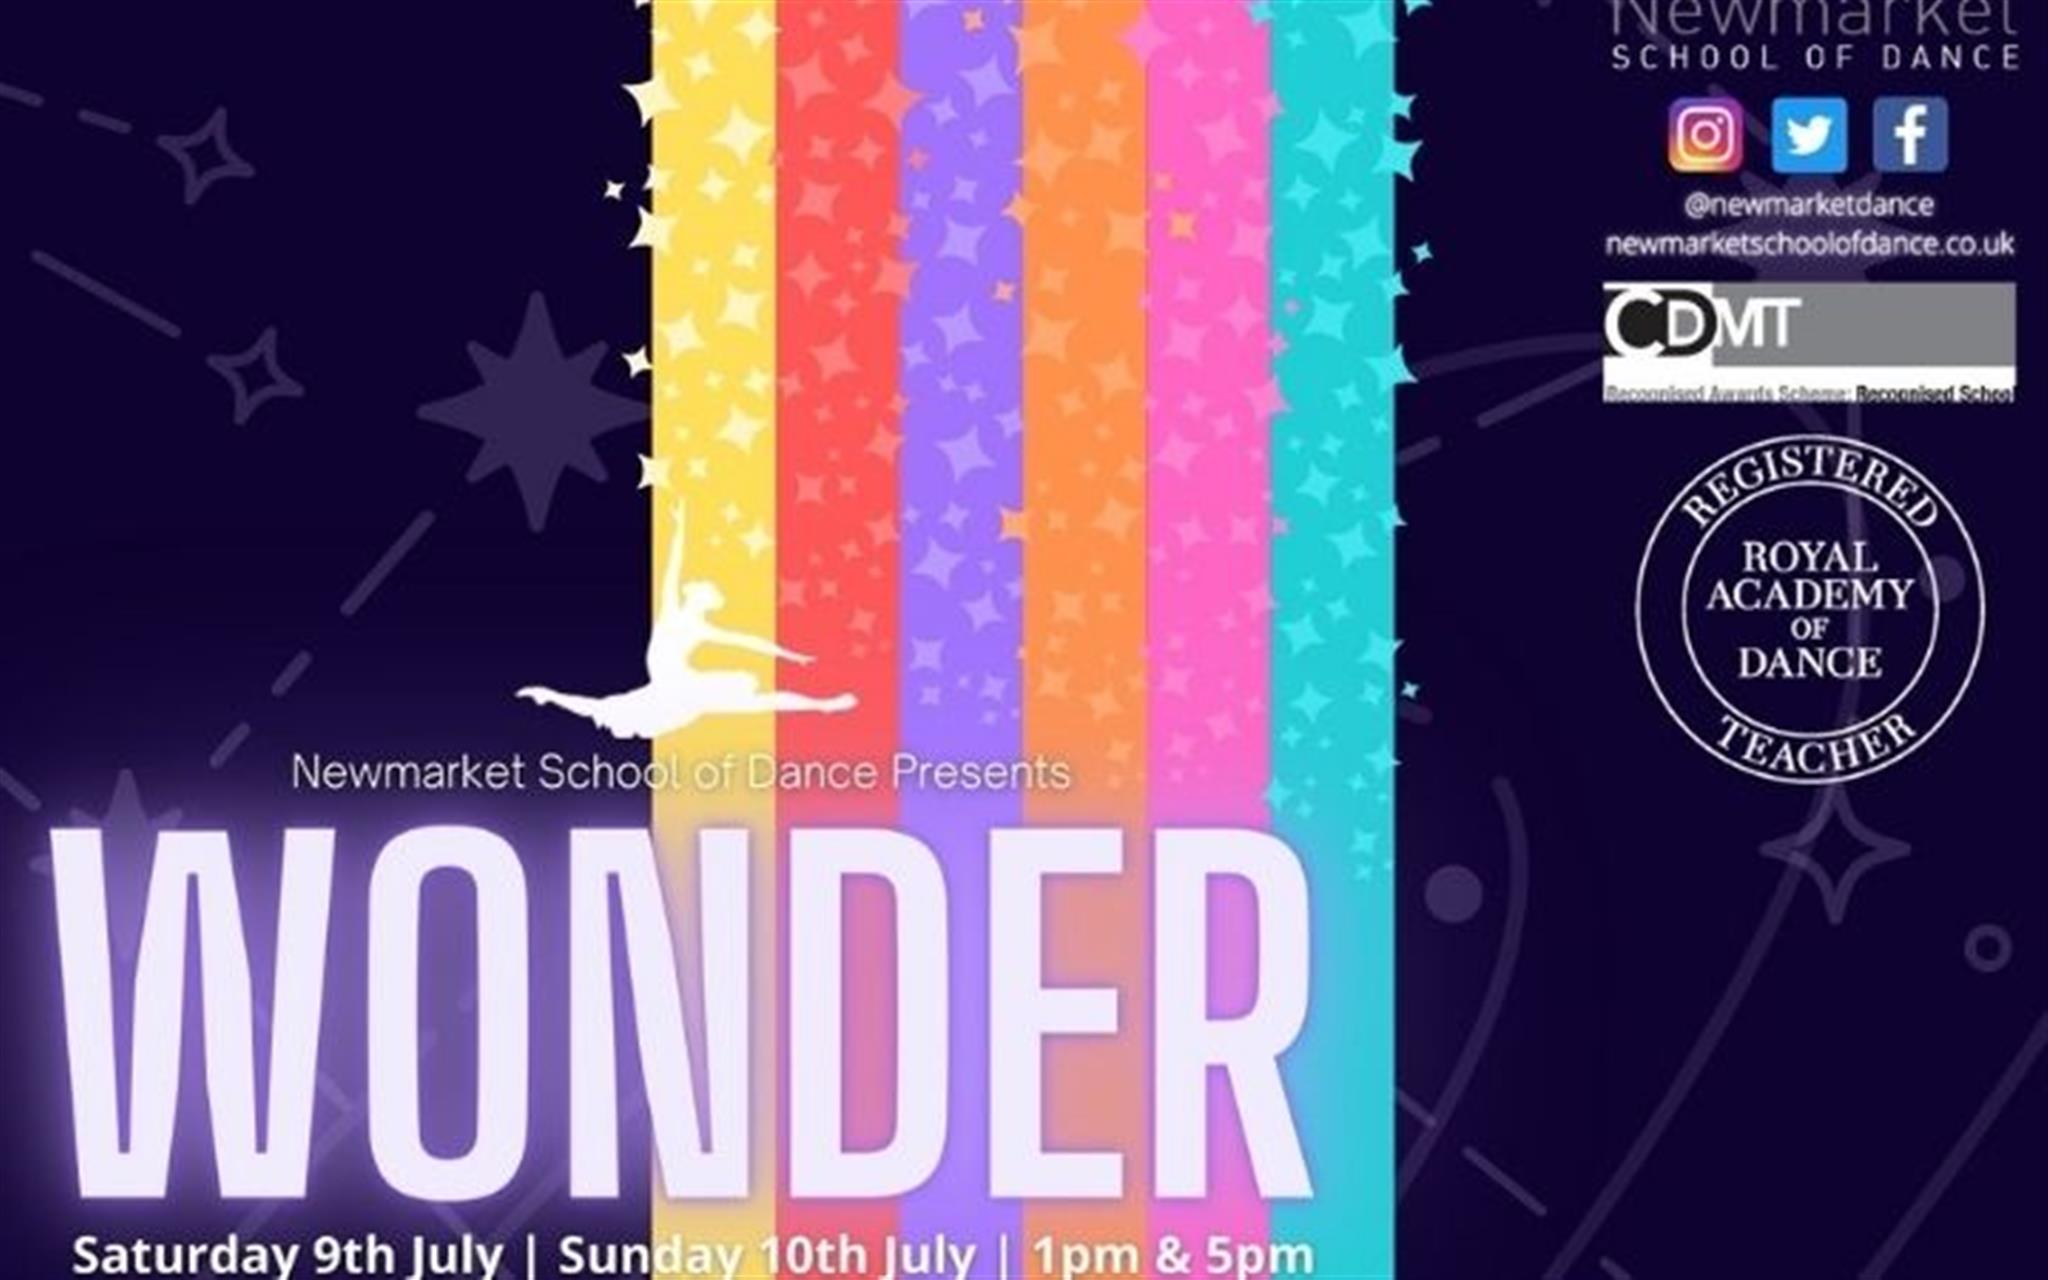 Newmarket School of Dance presents 'Wonder'